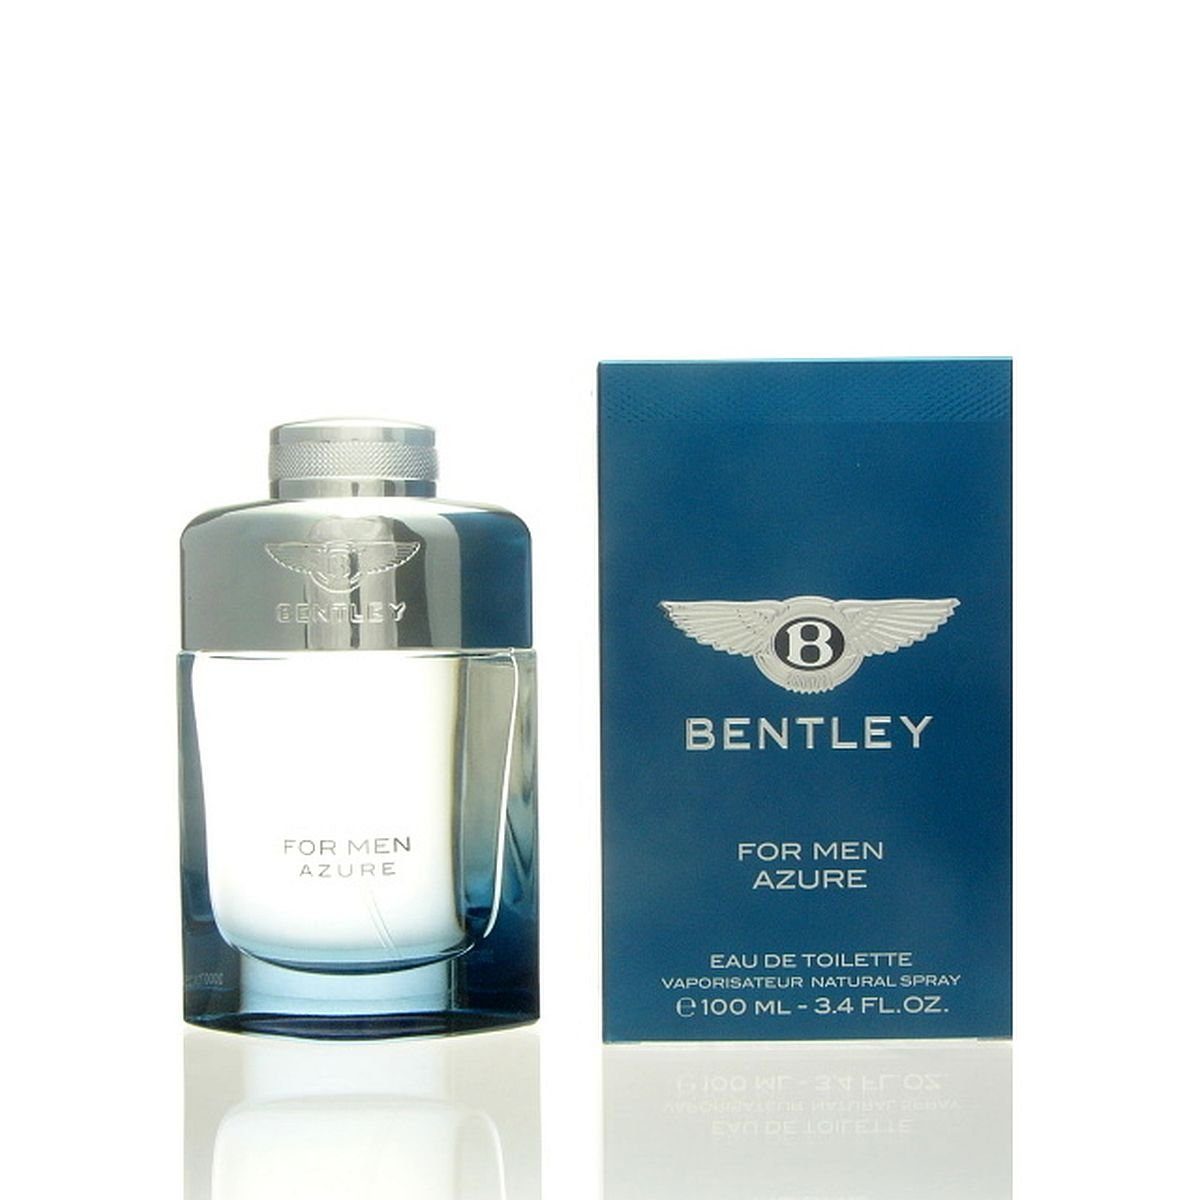 BENTLEY Eau de ml Azure Eau Bentley Men For Toilette Toilette Fragrances de 100